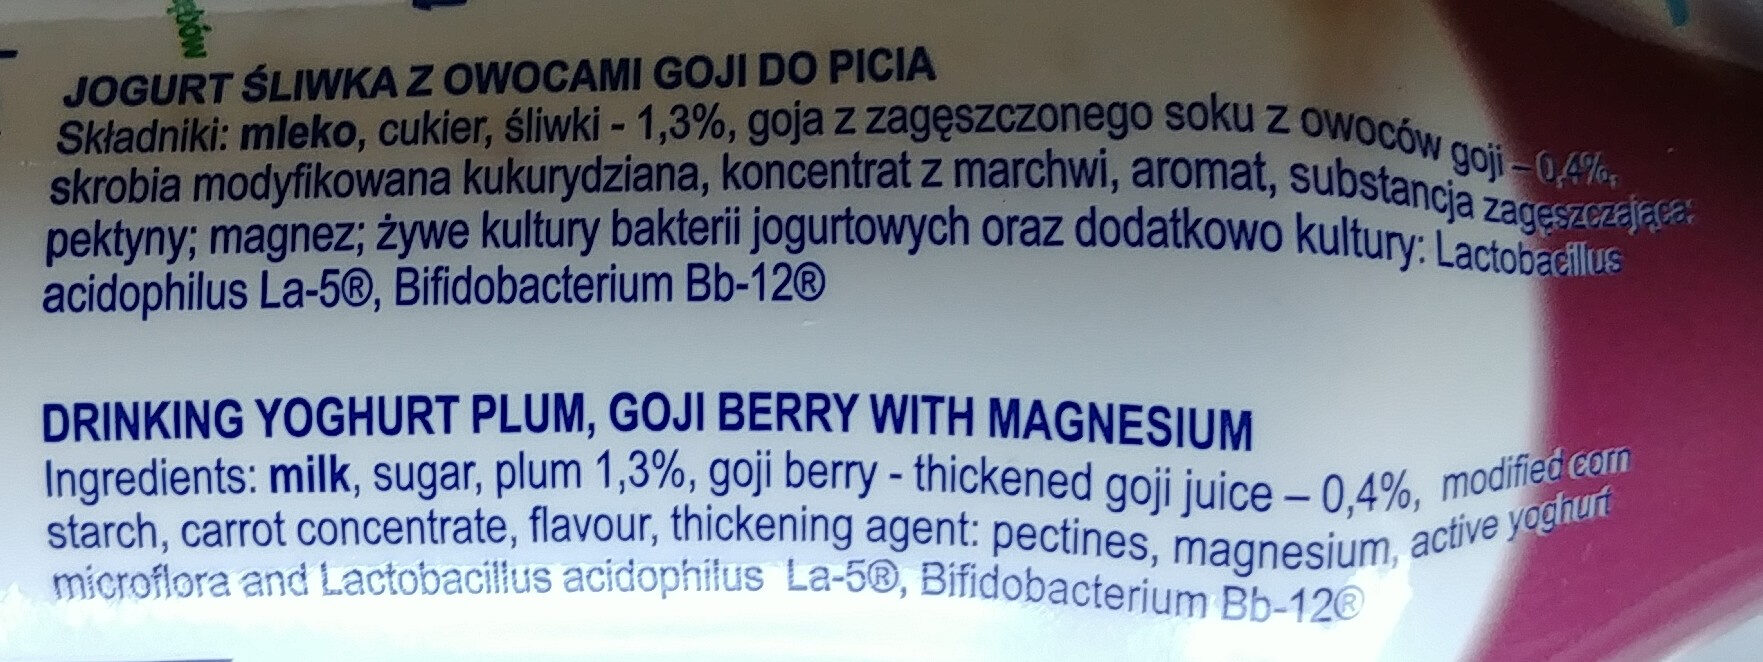 Jogurt śliwka z owocami goji do picia - Składniki